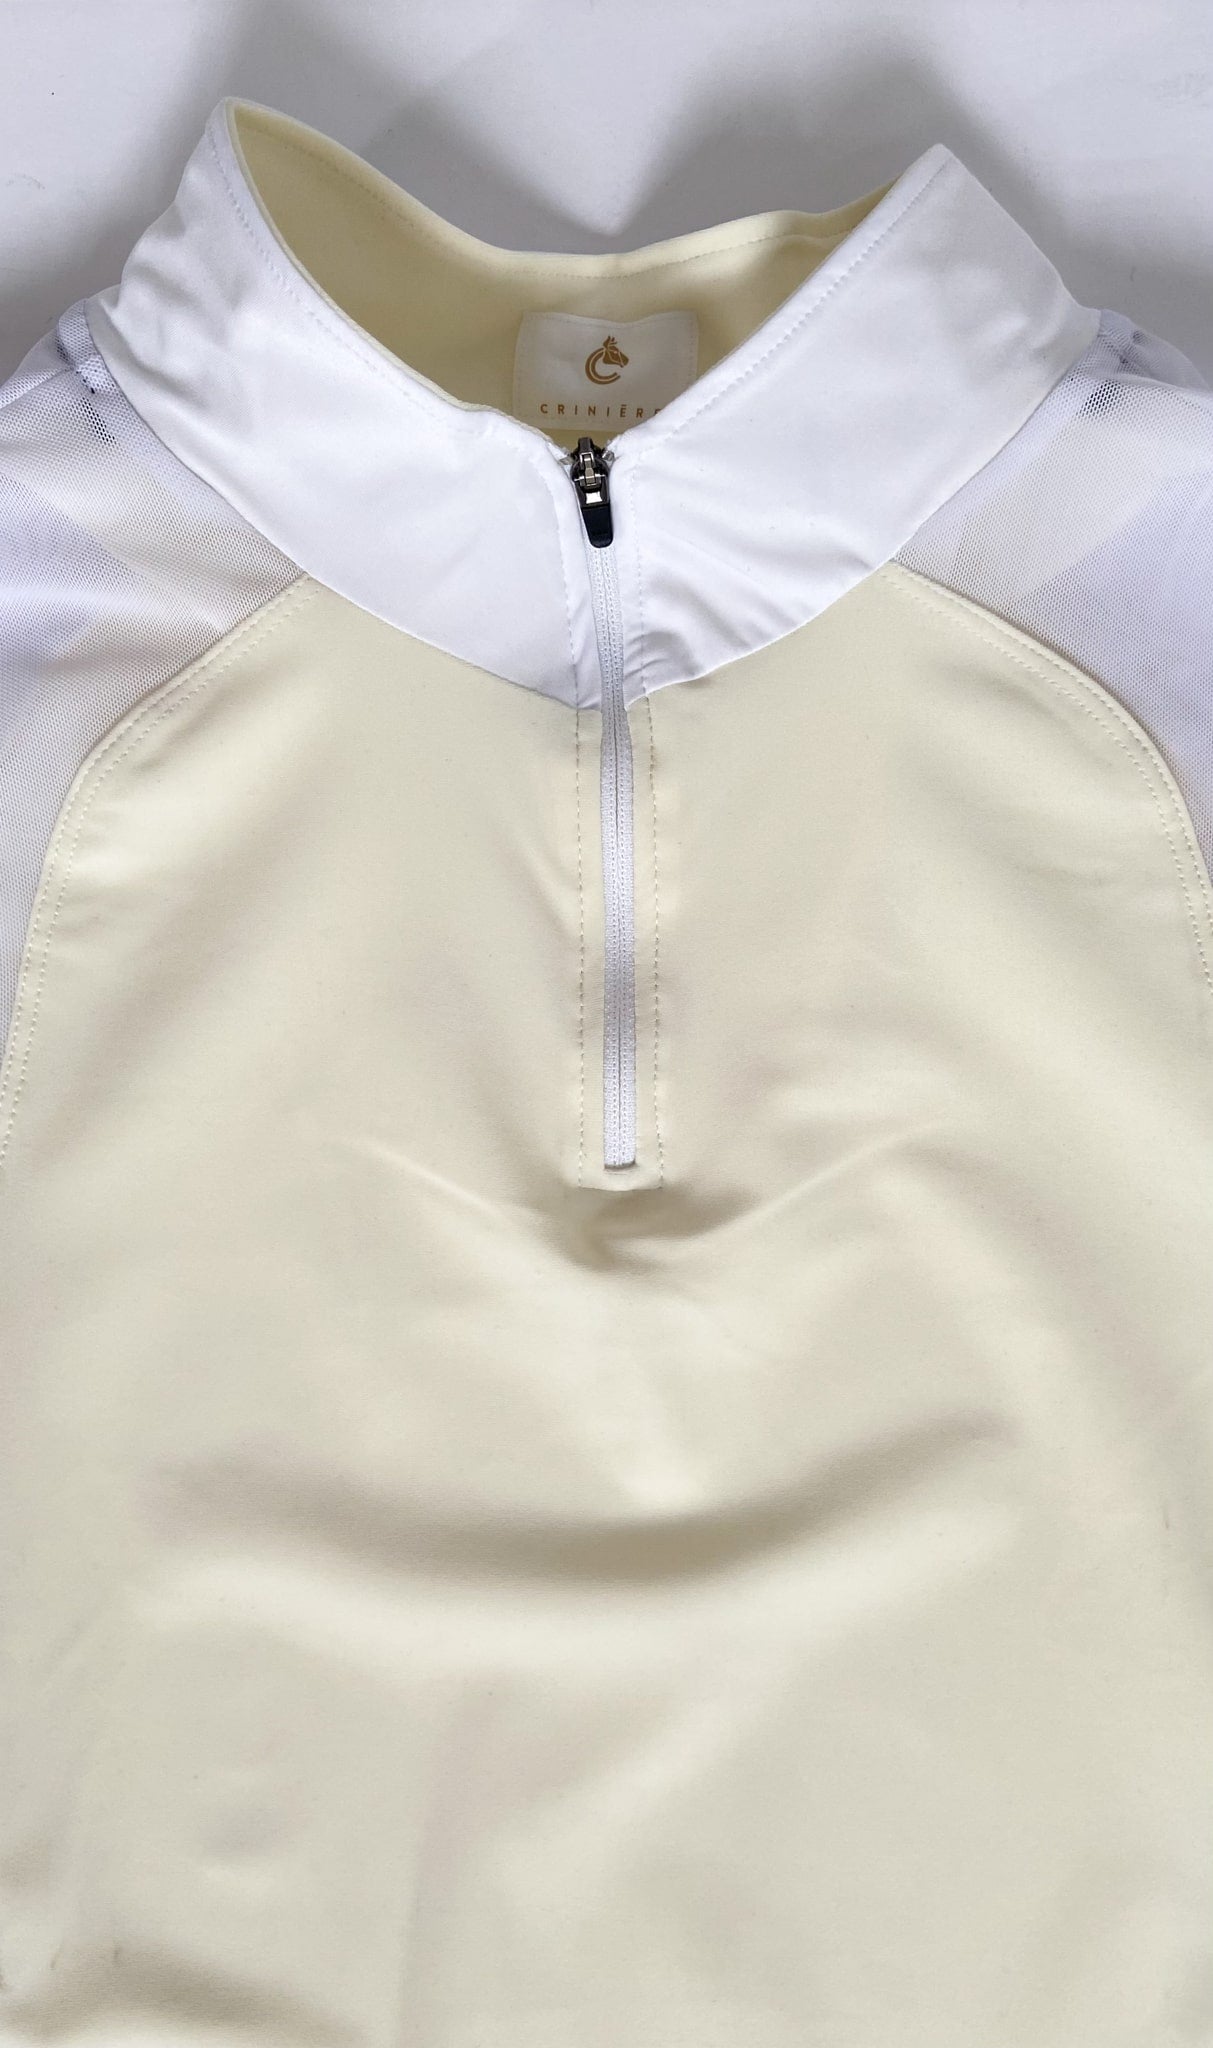 Criniere Alex Schooling Shirt - Cream/White - XXL